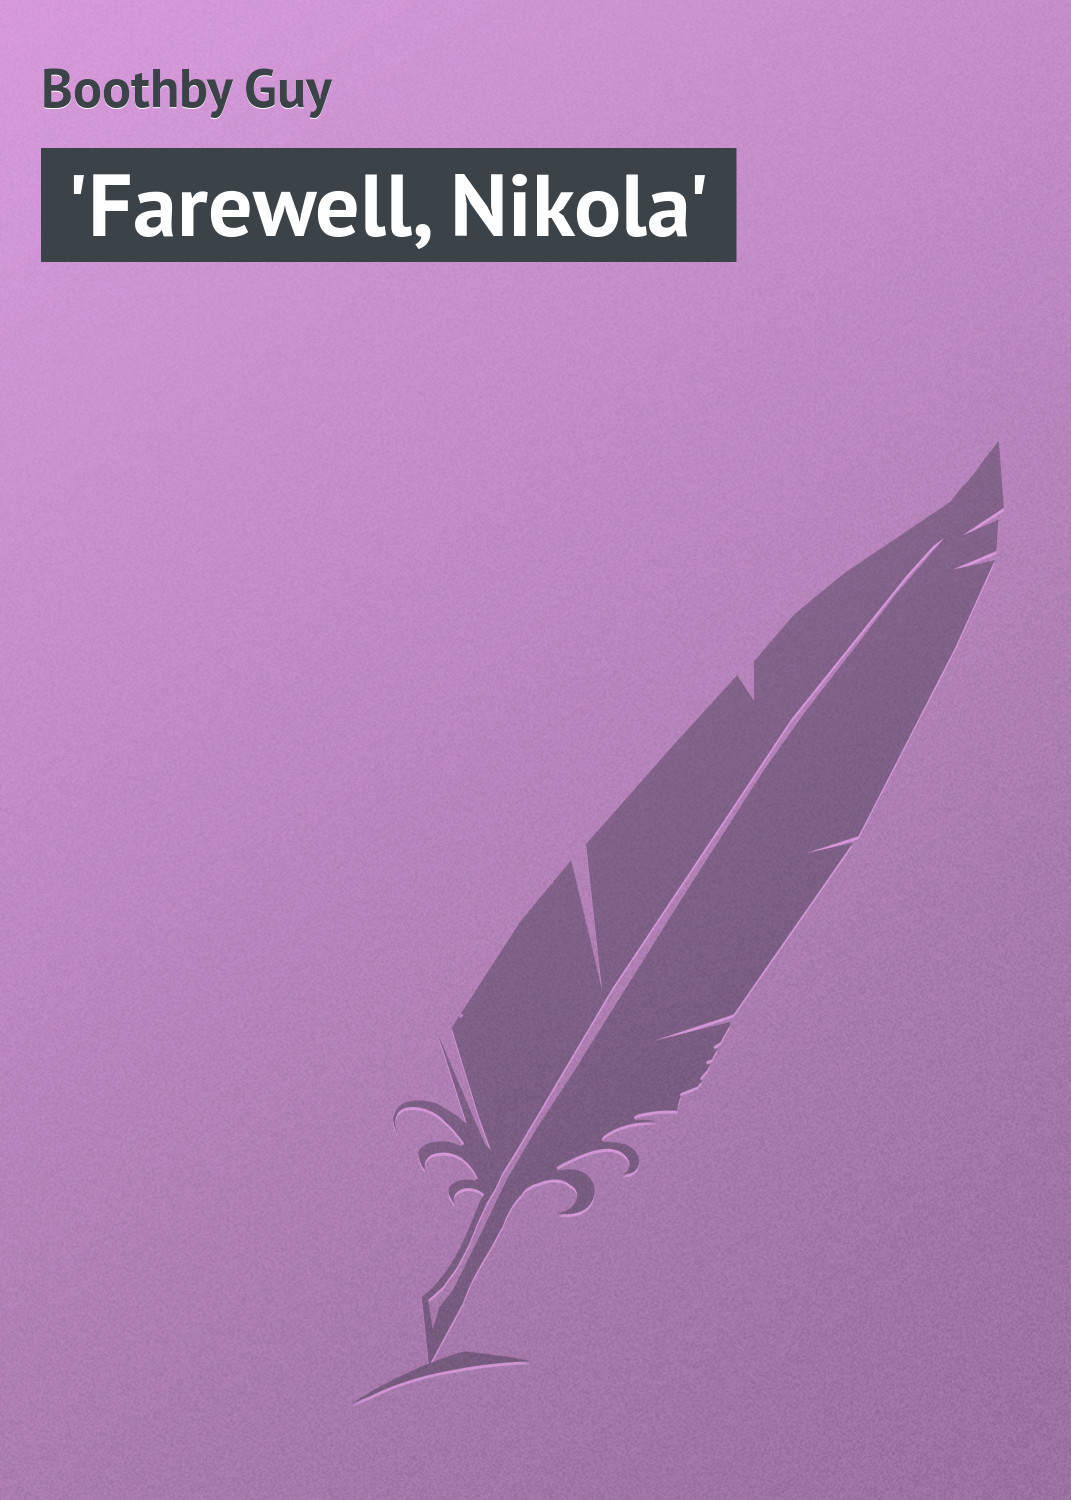 Книга 'Farewell, Nikola' из серии , созданная Guy Boothby, может относится к жанру Зарубежная классика. Стоимость электронной книги 'Farewell, Nikola' с идентификатором 23165763 составляет 5.99 руб.